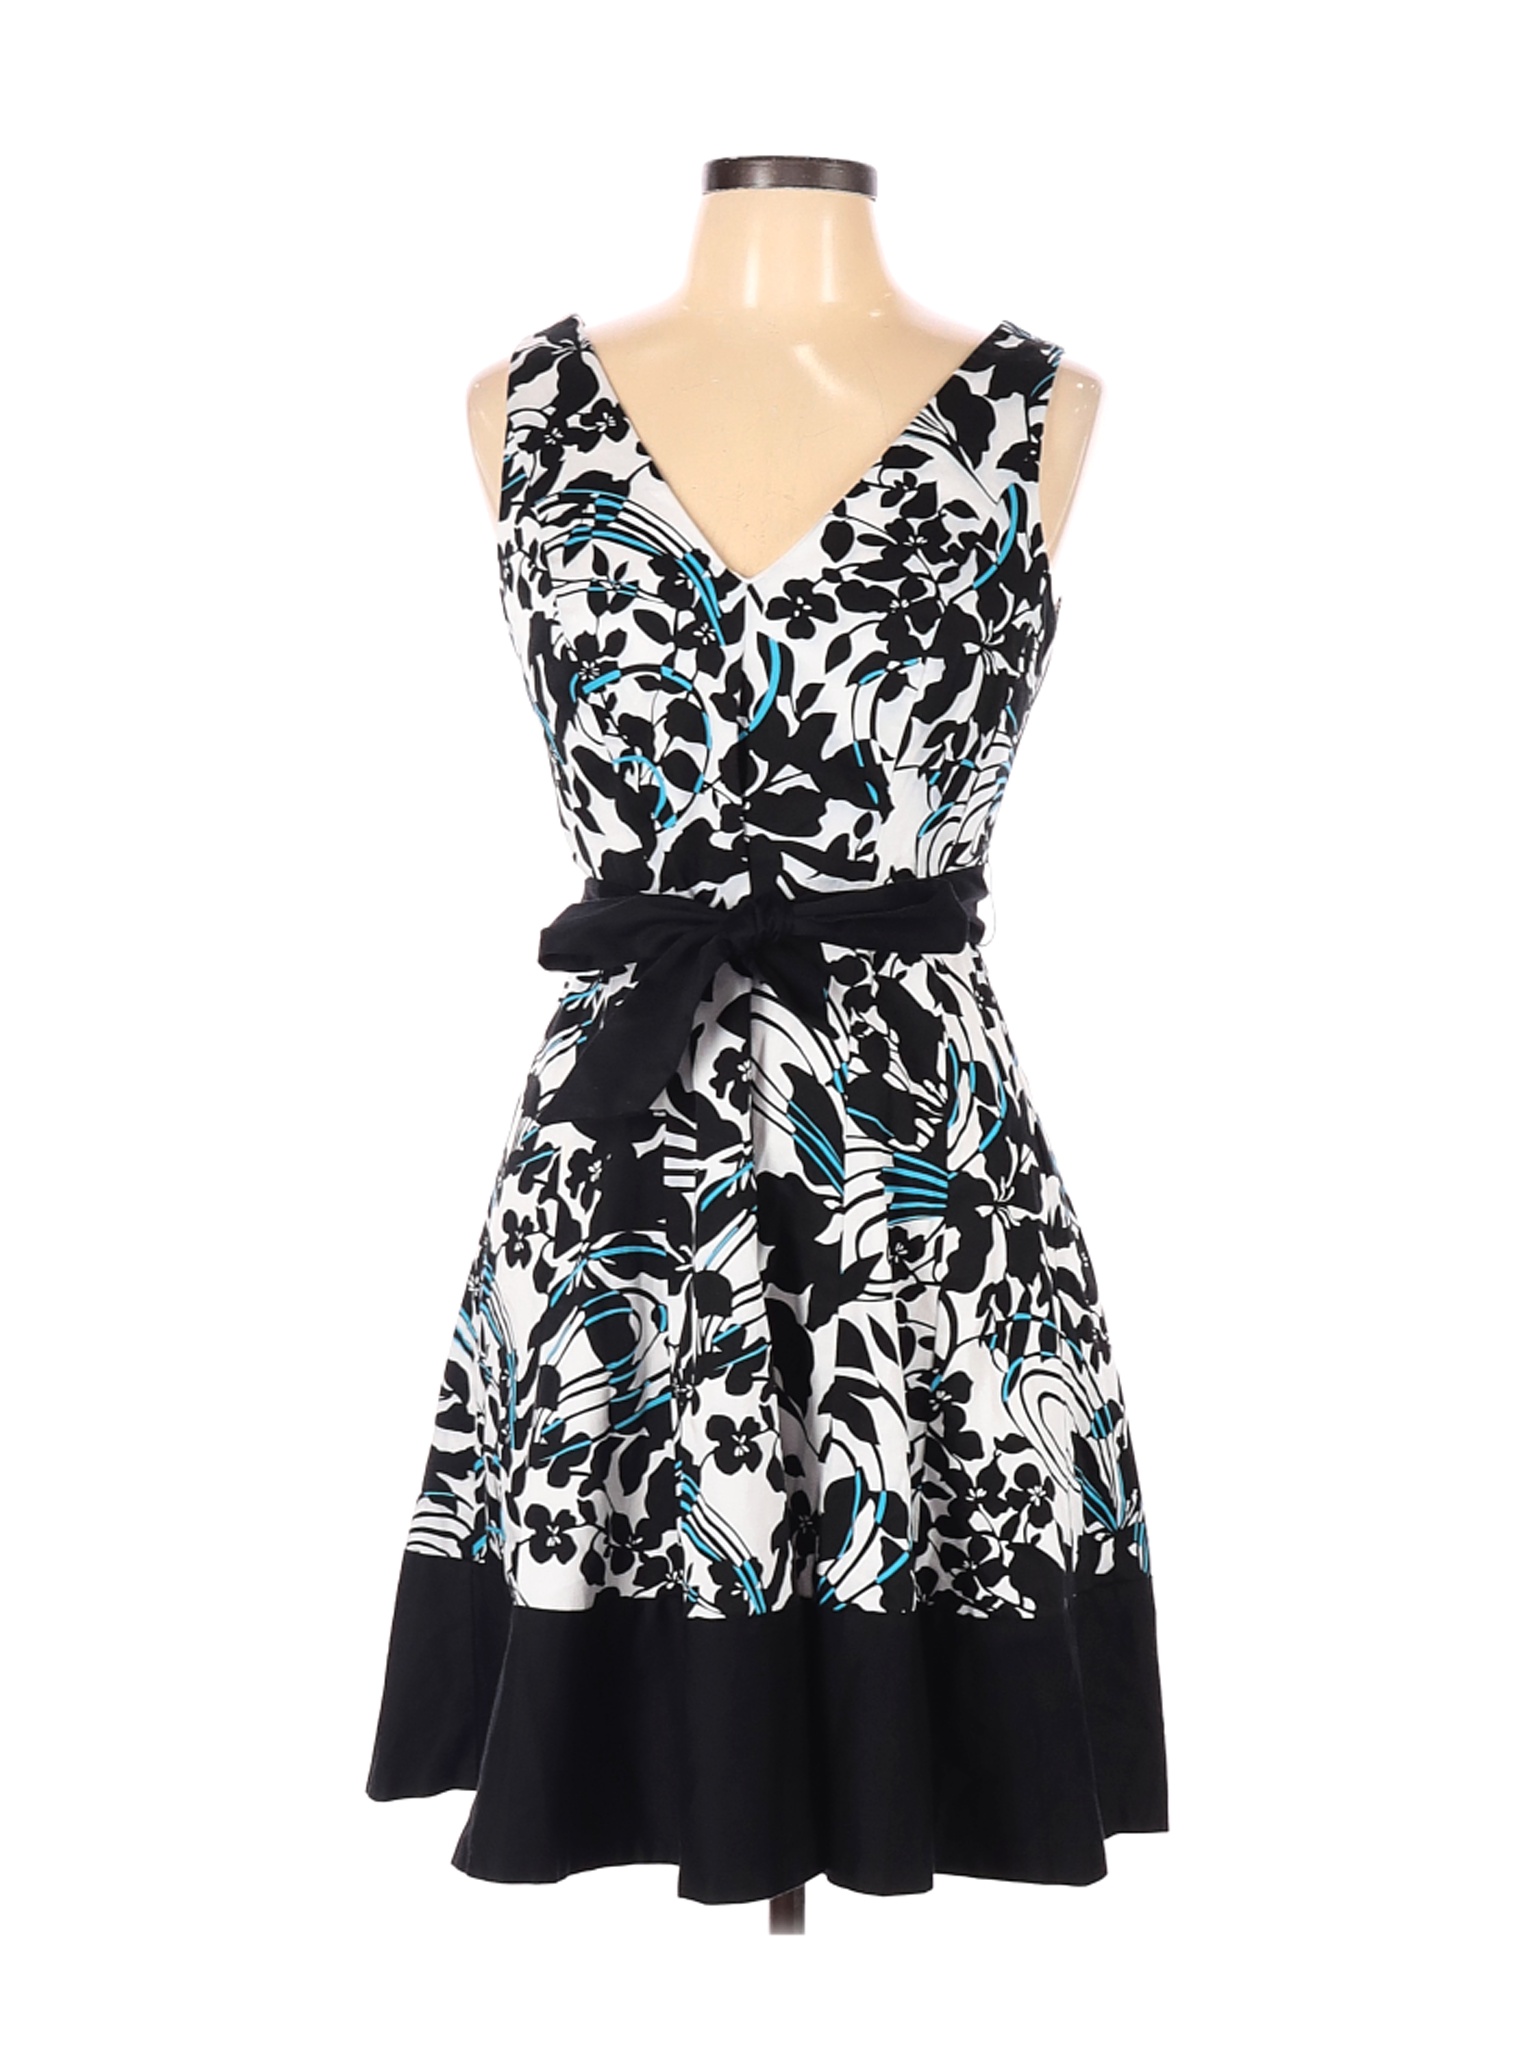 Jones Wear Women Black Casual Dress 12 Petites | eBay